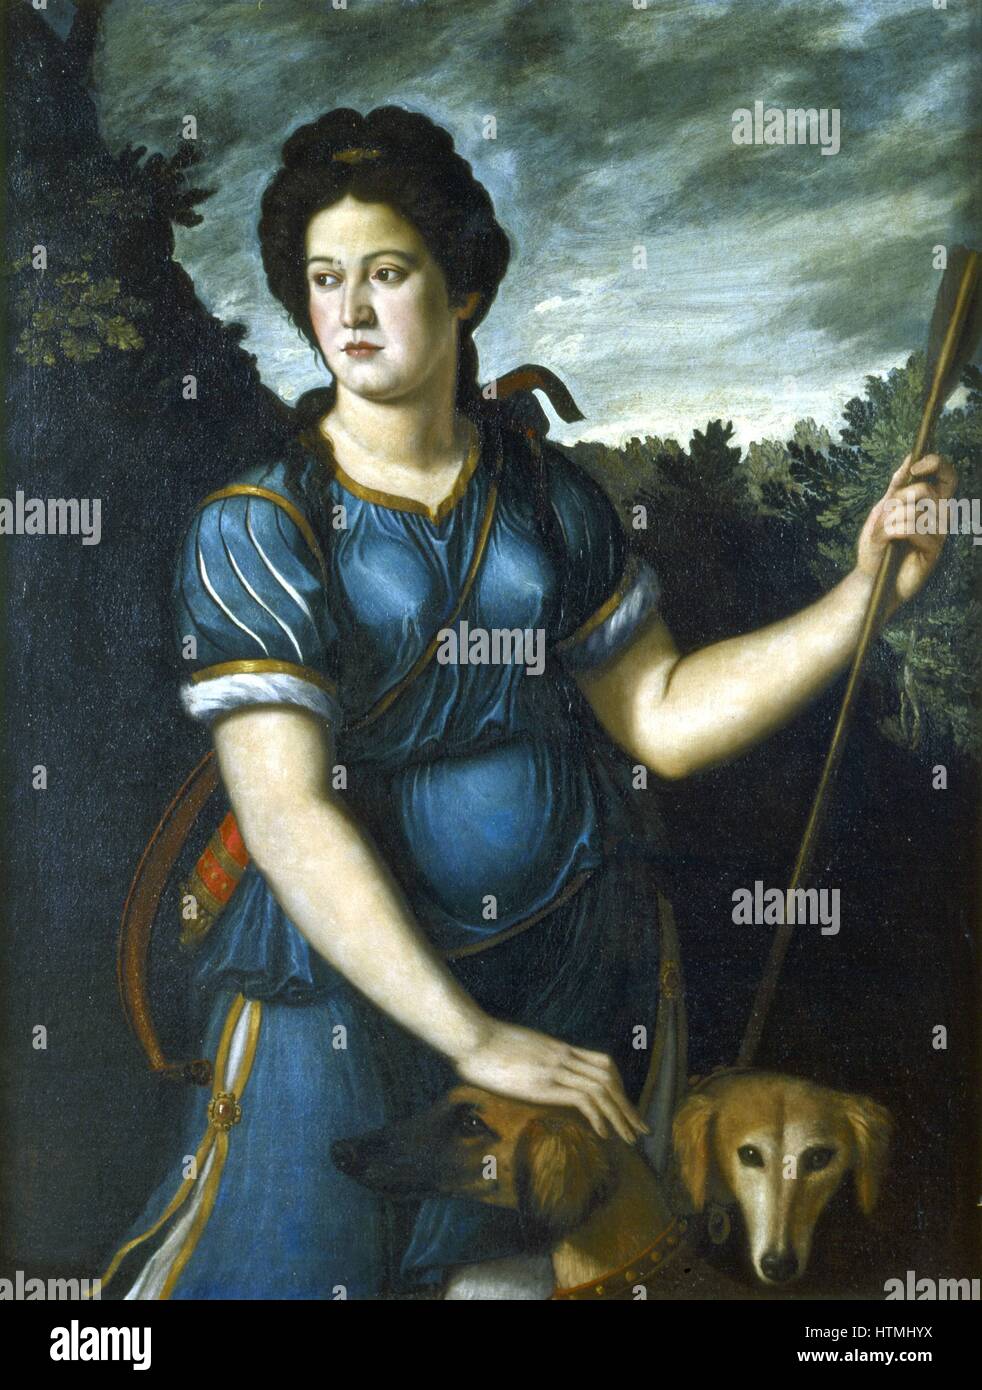 Schule von Paris Bordone: Italienisch aus dem 16. Jahrhundert. Diana die Jägerin mit ihren beiden Hunden. Öl auf Leinwand. Privatsammlung Stockfoto